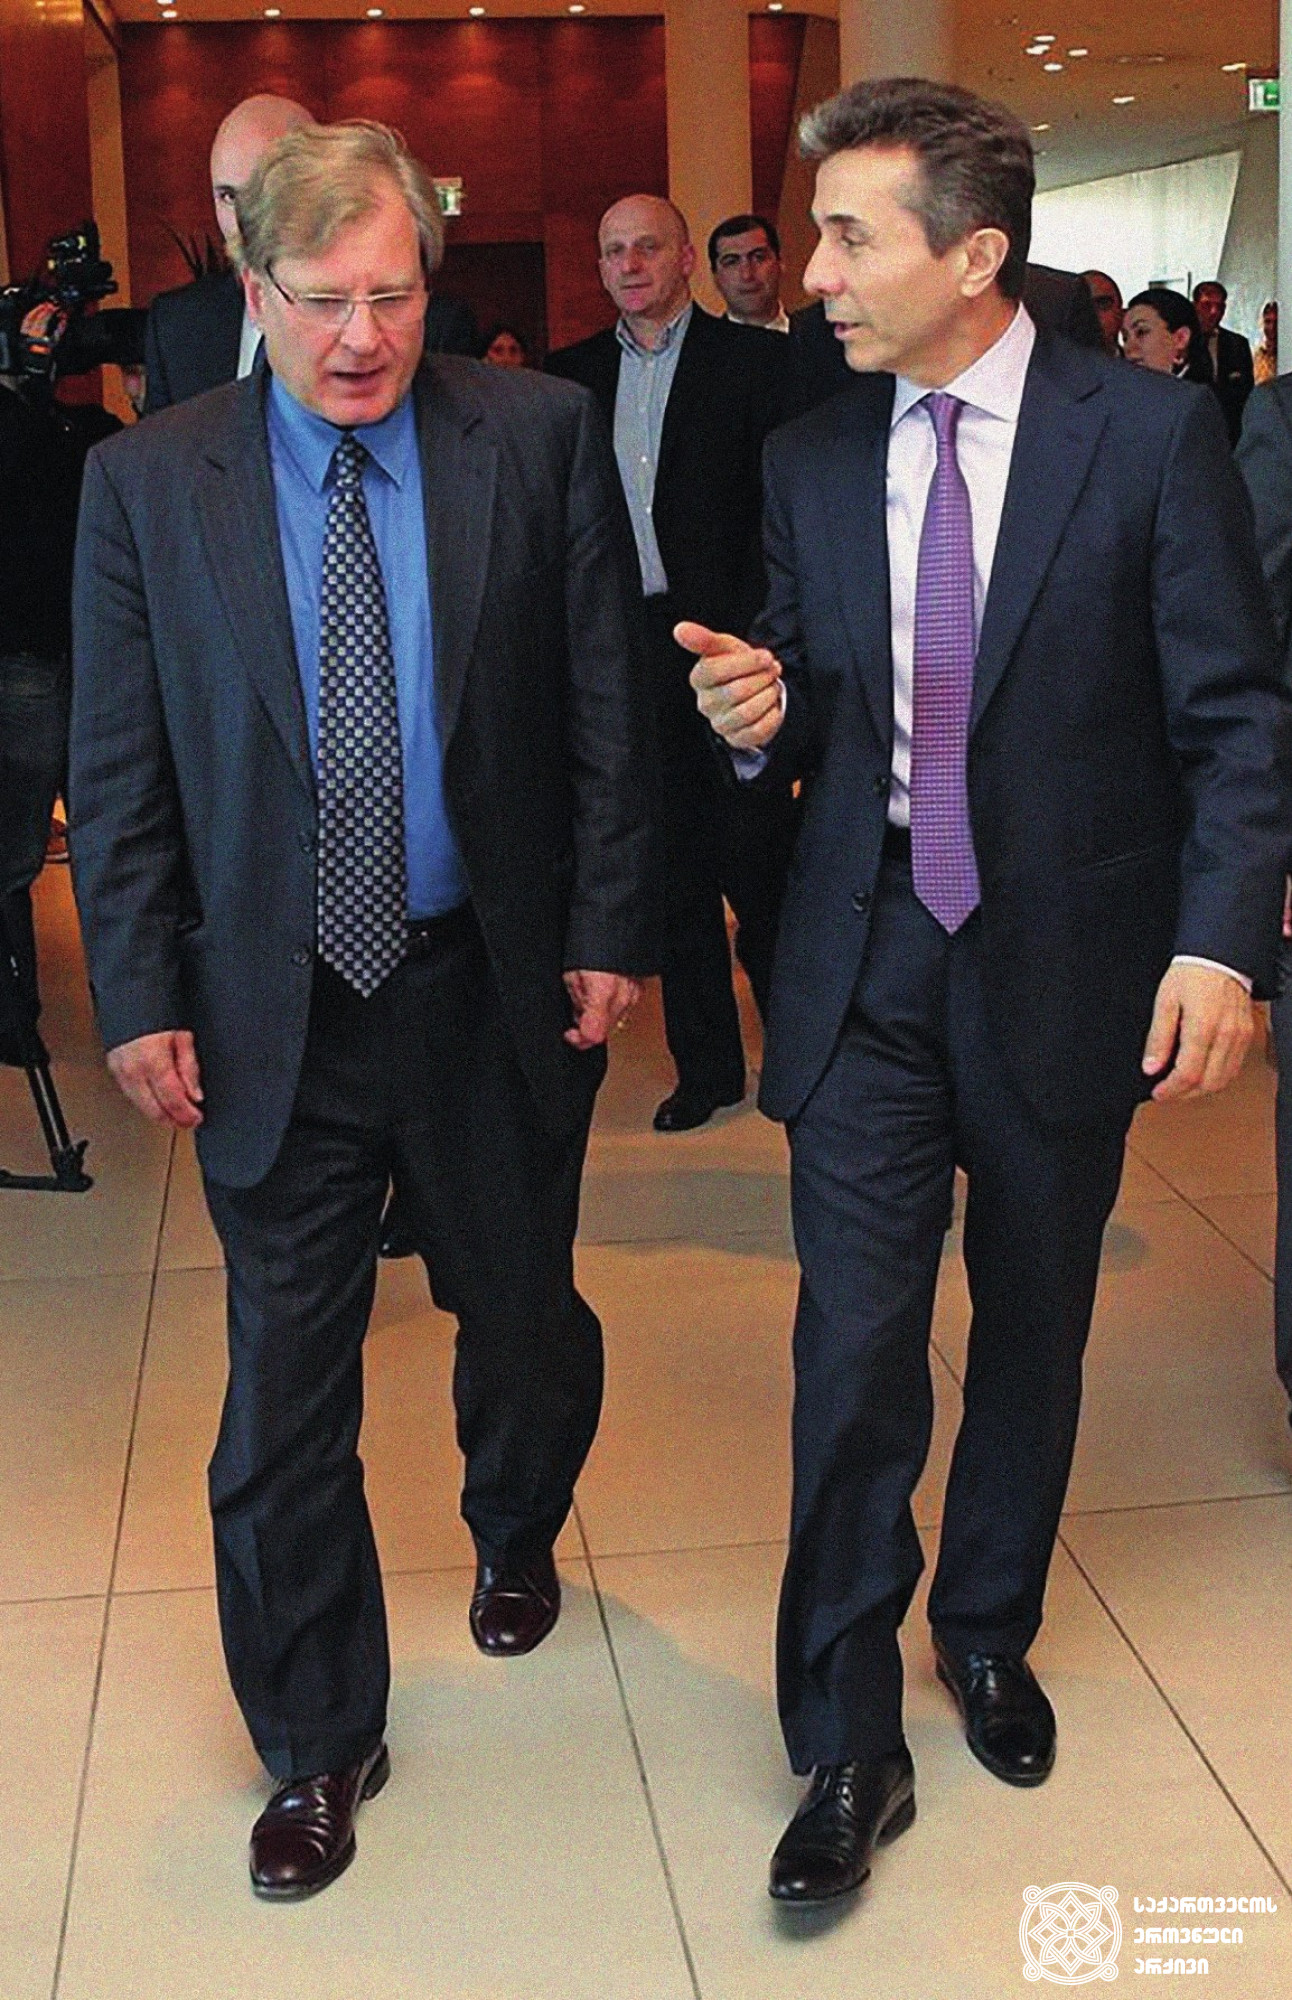 აშშ-ის ელჩი საქართველოში რიჩარდ ნორლანდი და საქართველოს პრემიერ-მინისტრი ბიძინა ივანიშვილი.<br> 
თბილისი, 2013 წელი. <br>
ფოტო ინტერნეტრესურსიდან.<br> 
Ambassador of th U.S. to Georgia Richard Norland and Prime Minister of Georgia Bidzina Ivanishvili. <br>
Tbilisi, 2013. <br>
Photo from internet resource.